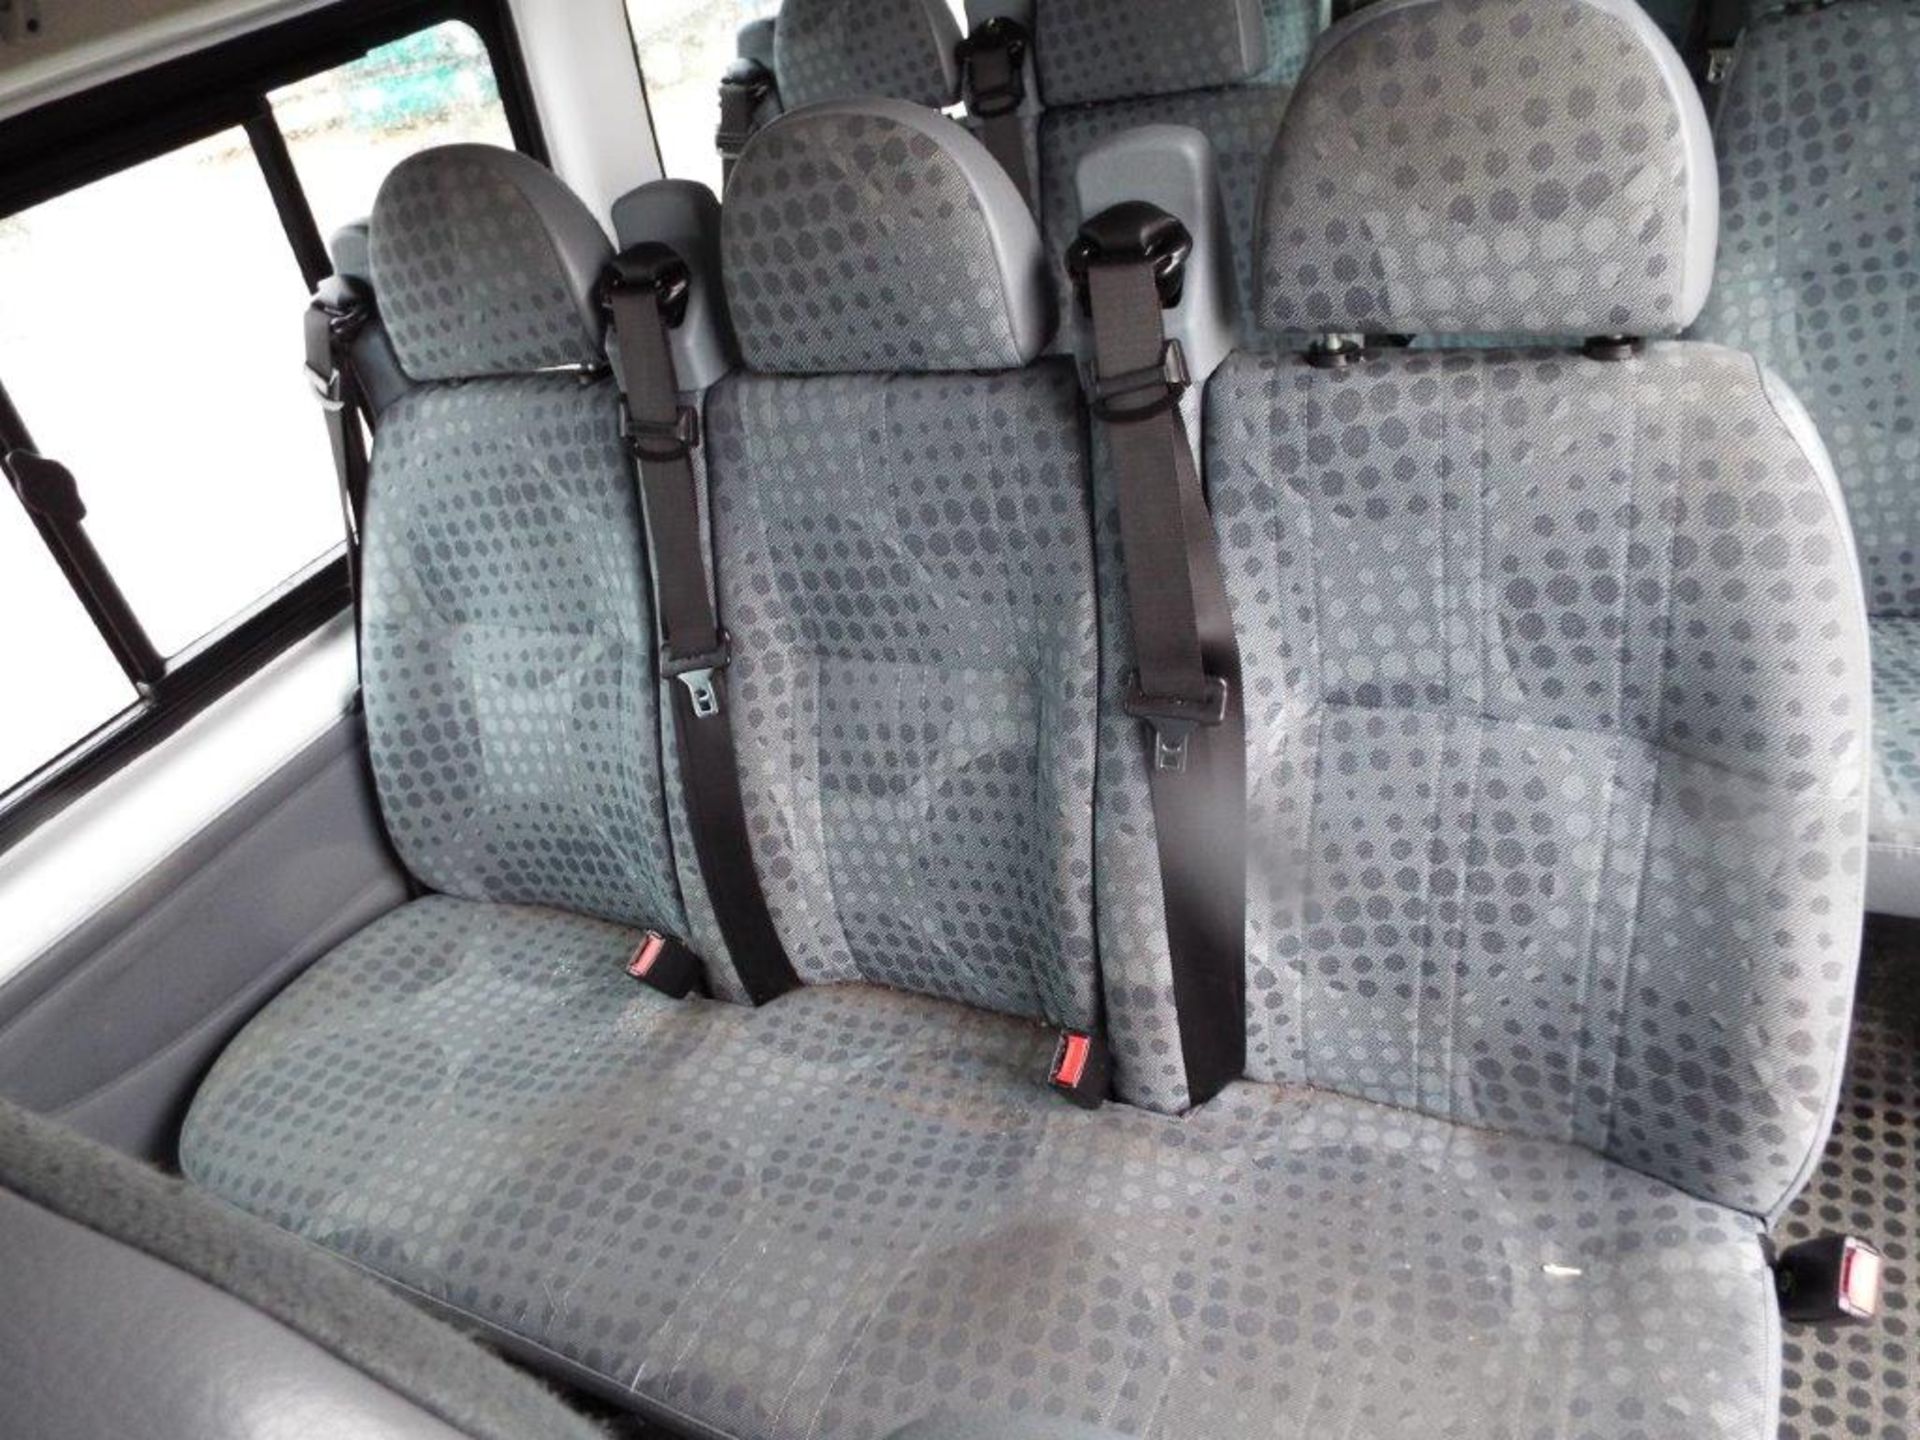 Ford Transit 15 Seat Minibus - Image 16 of 23